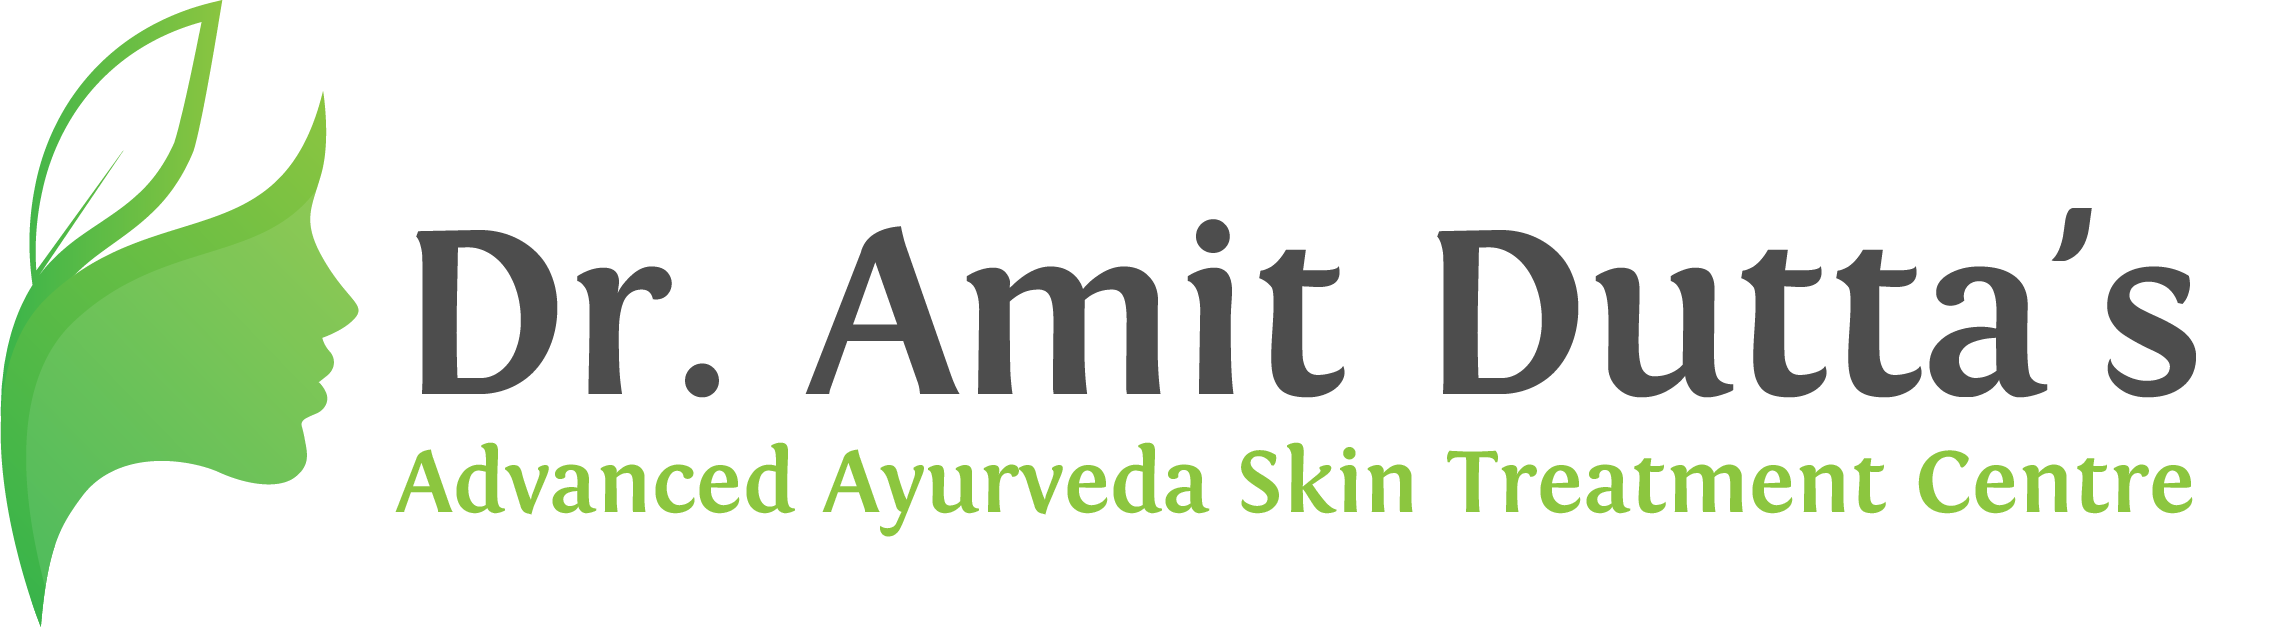 Dr. Amit Dutta. Best Ayurvedic Doctor & Skin Specialist in Punjab, India.